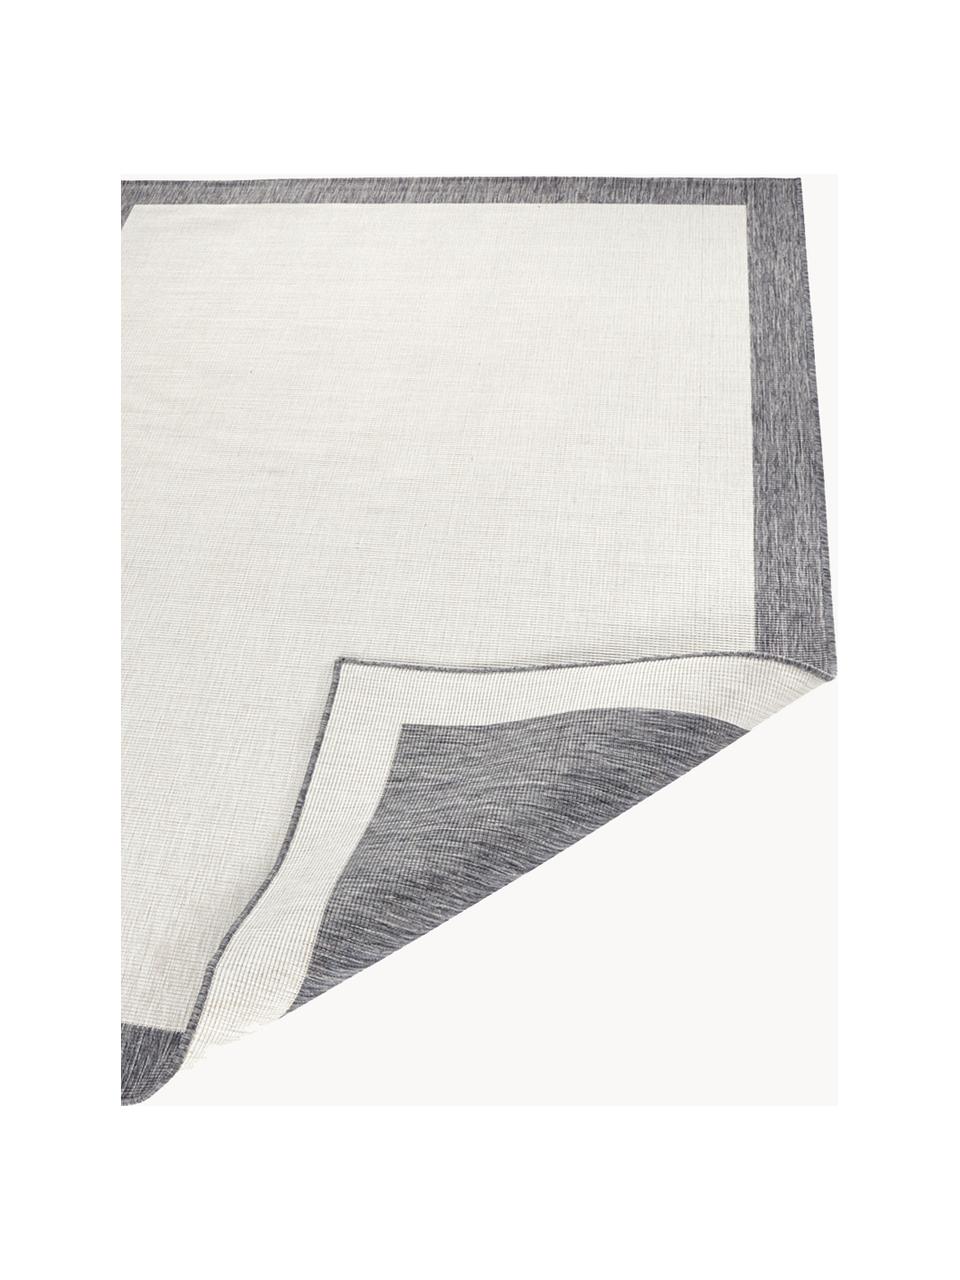 Dwustronny dywan Panama, Jasny szary, ciemny szary, 160 x 230 cm